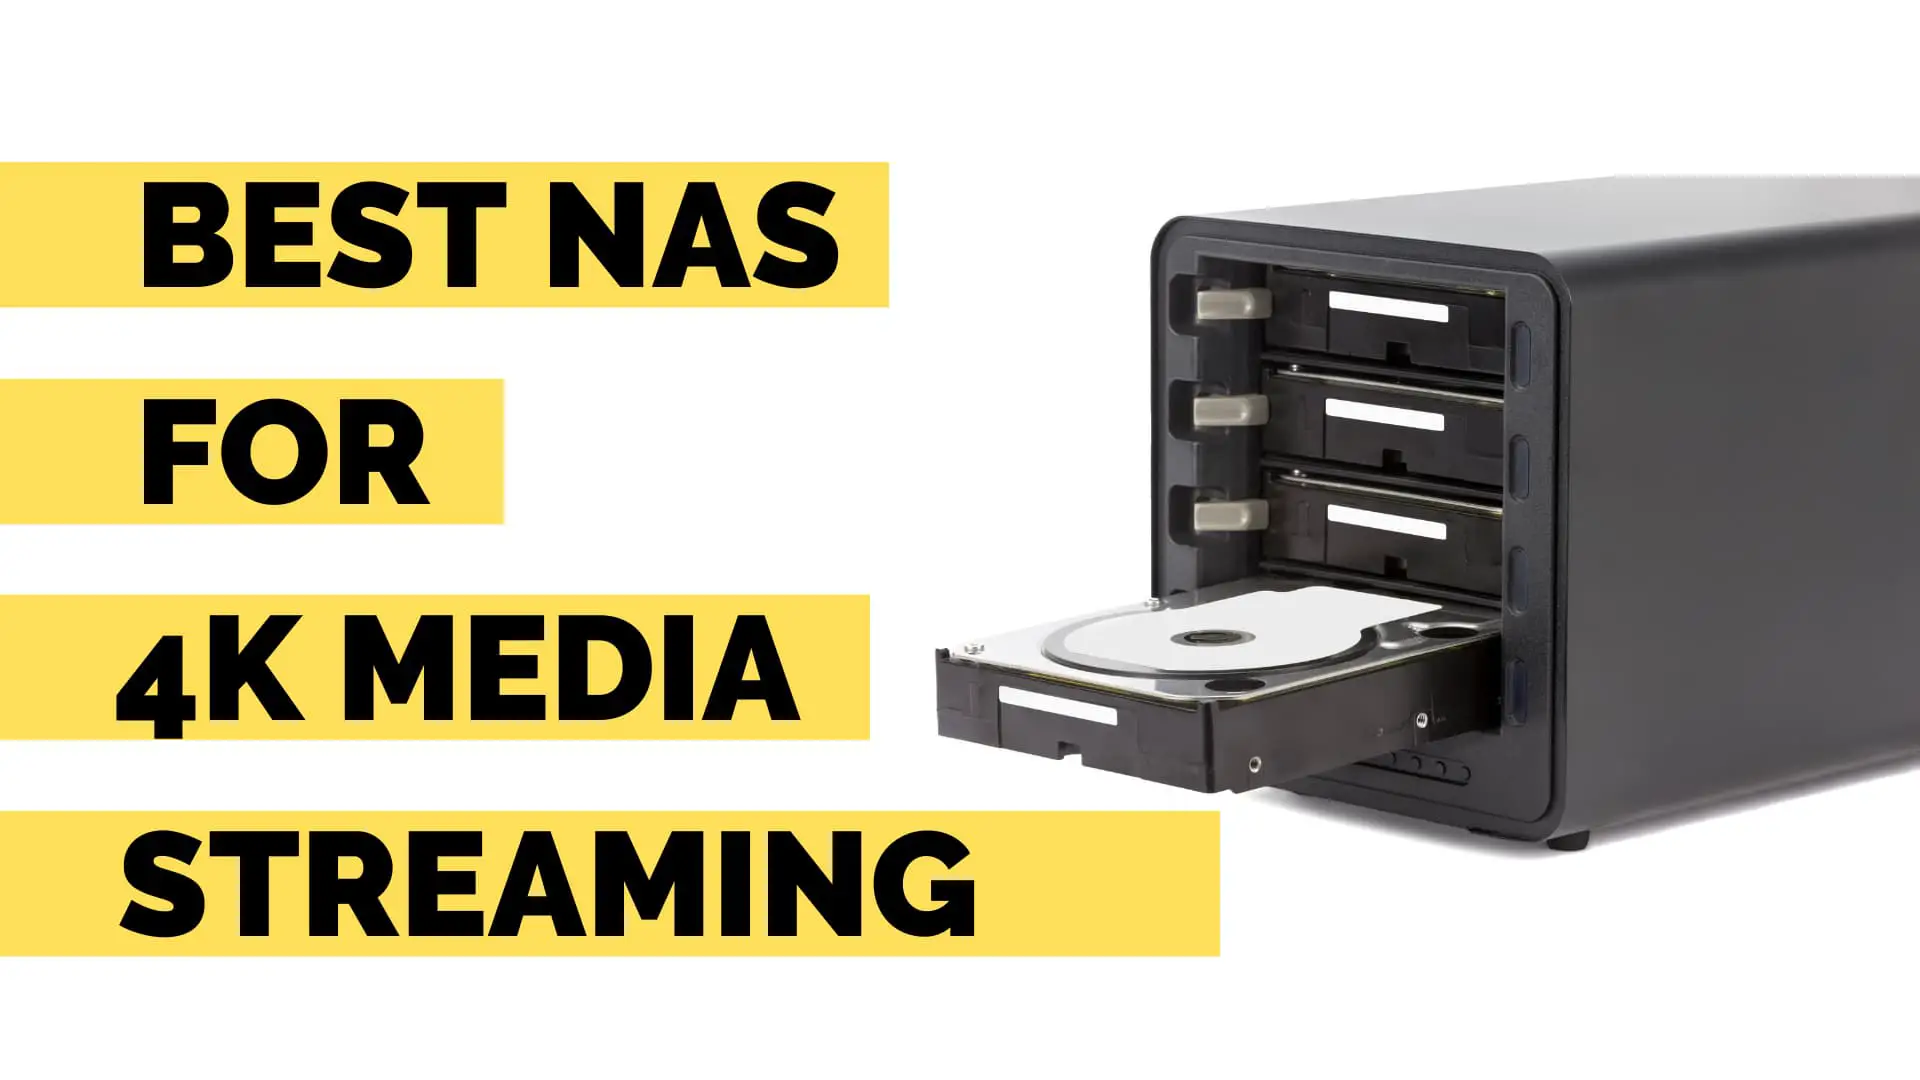 Best NAS for 4K streaming